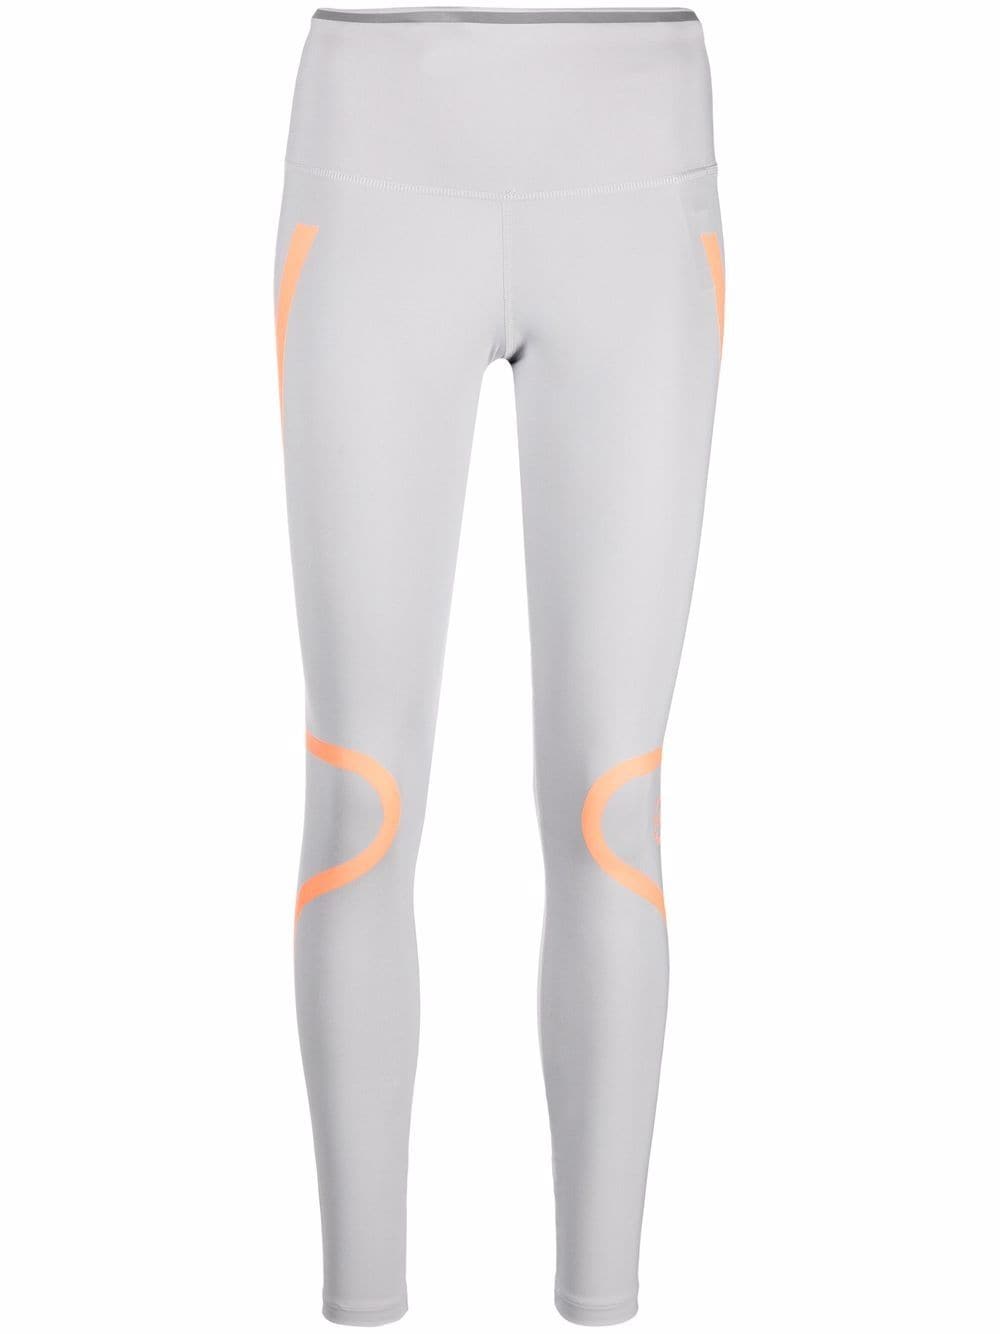 adidas by Stella McCartney TruePace running leggings - Grey - Modafirma